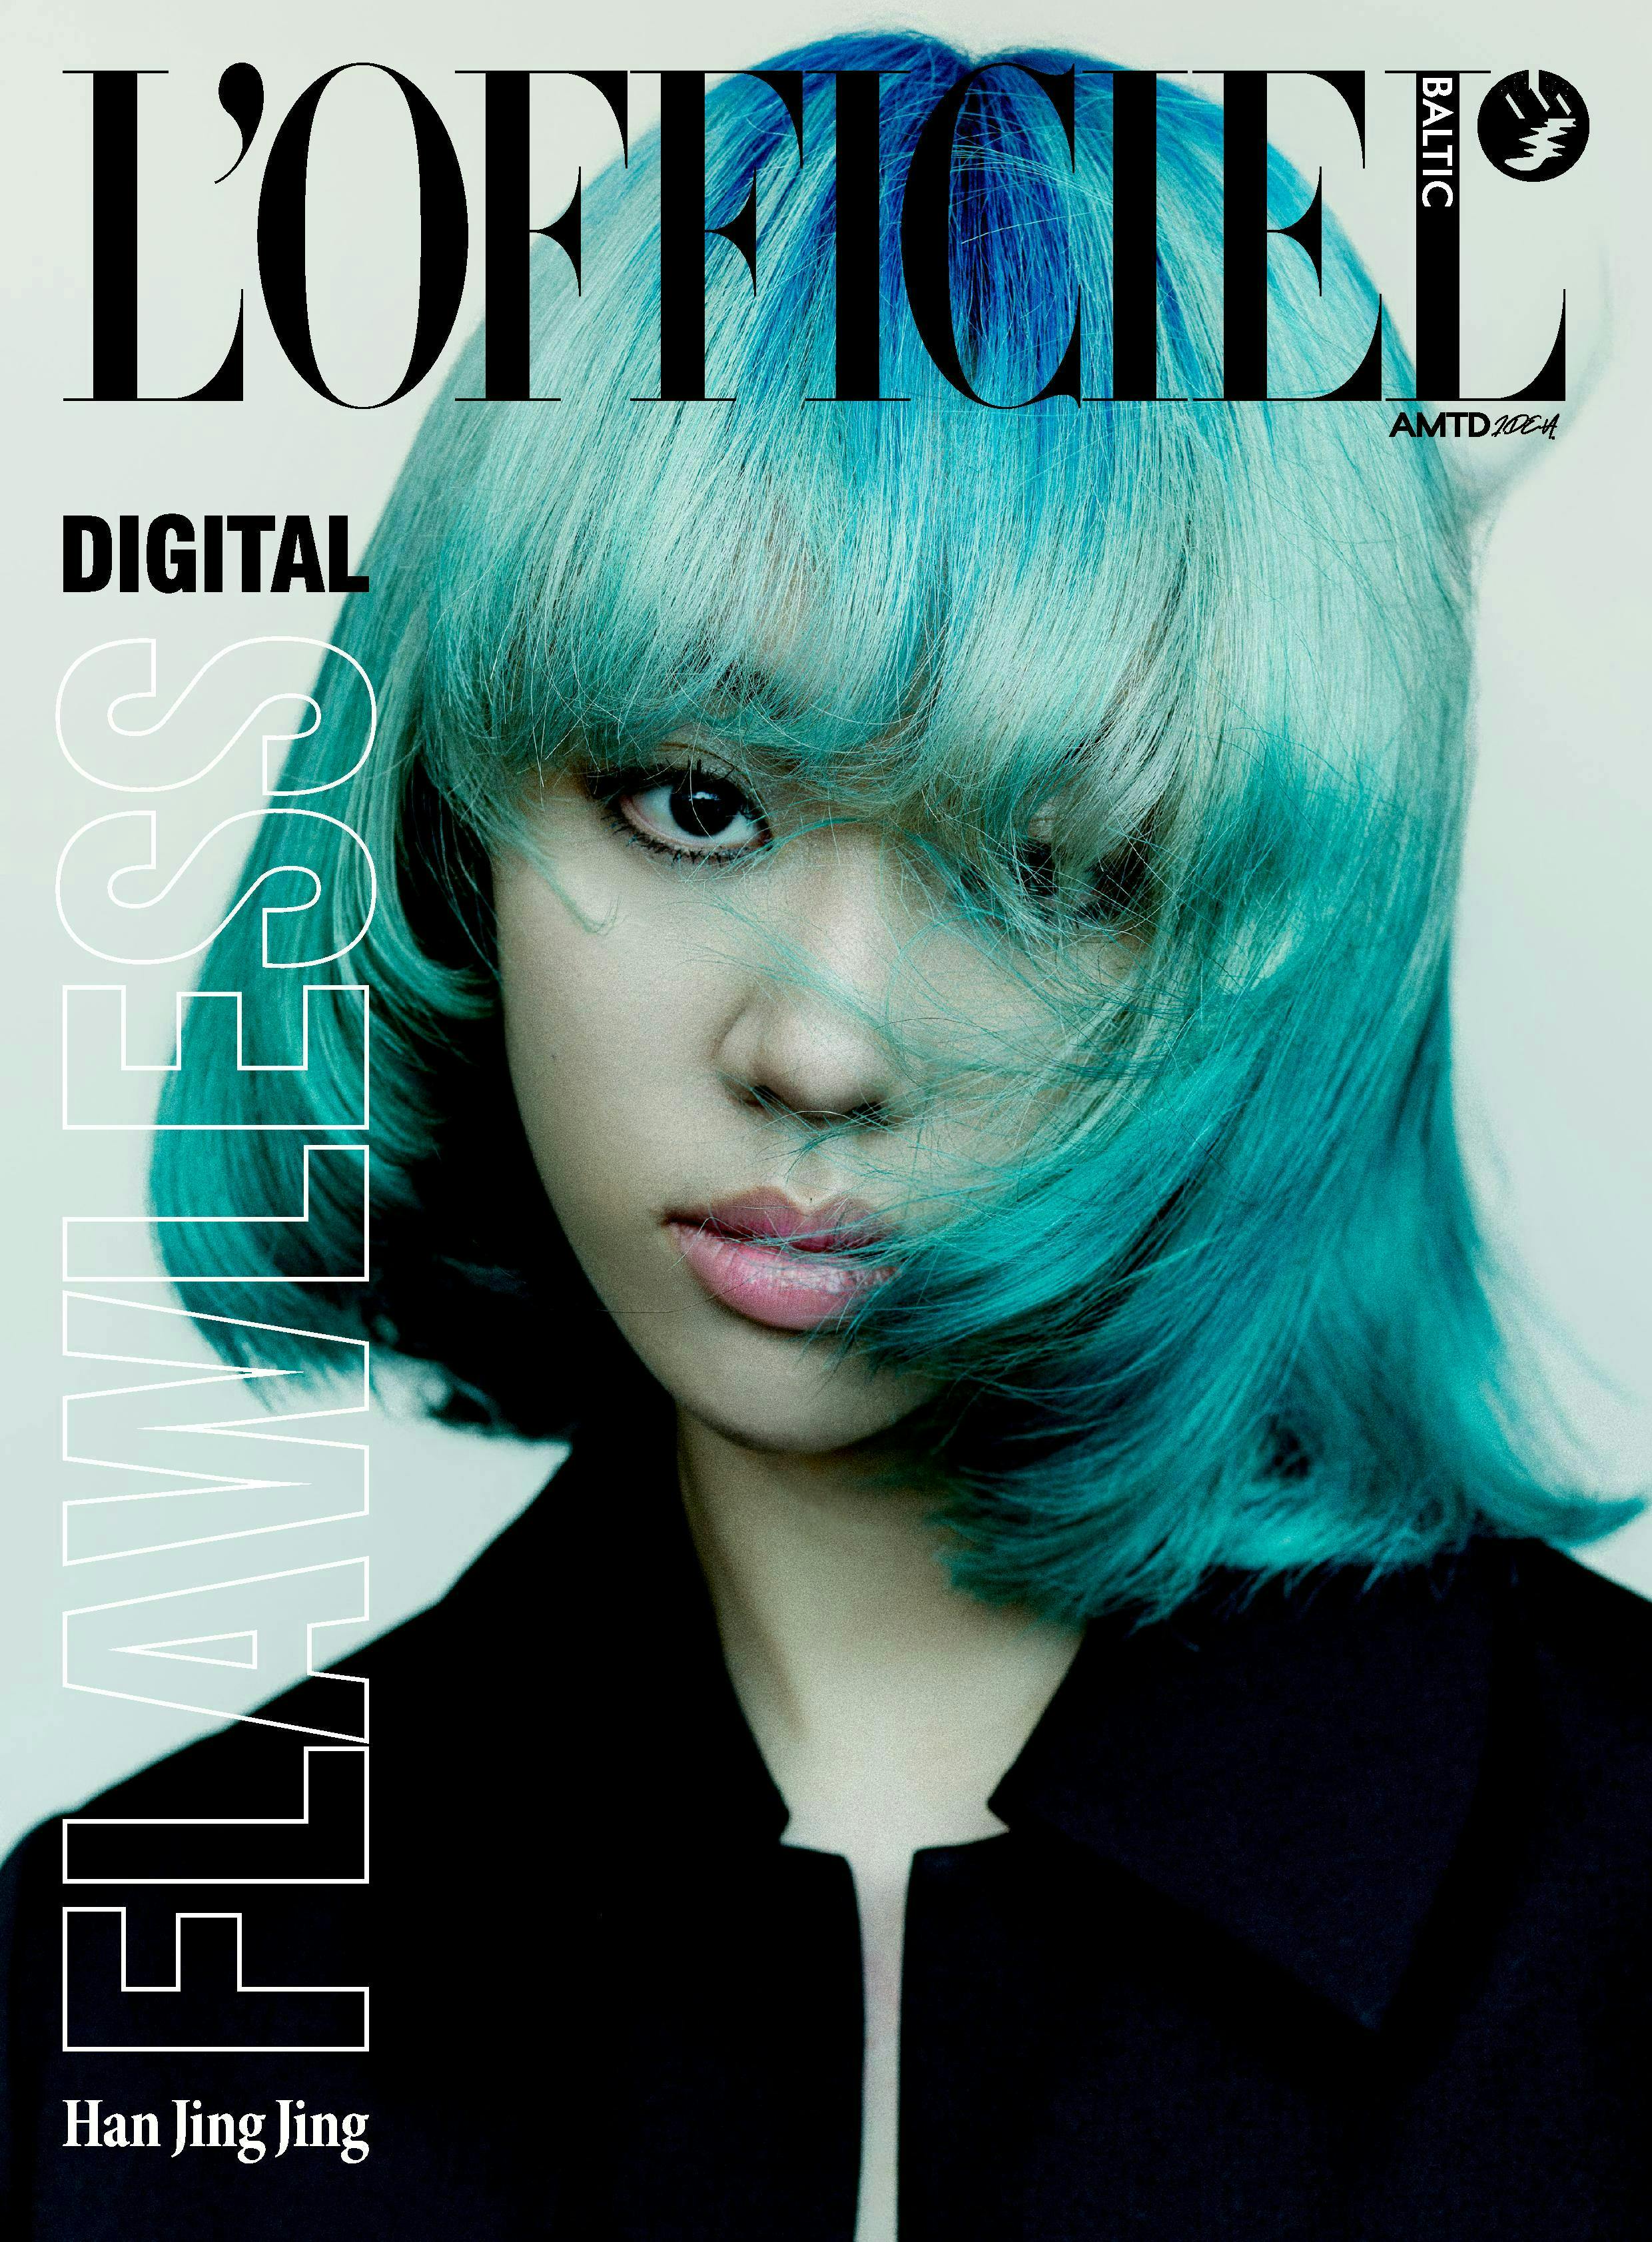 L'Officiel Baltic DIGITAL Cover. Model: Han Jingjing.